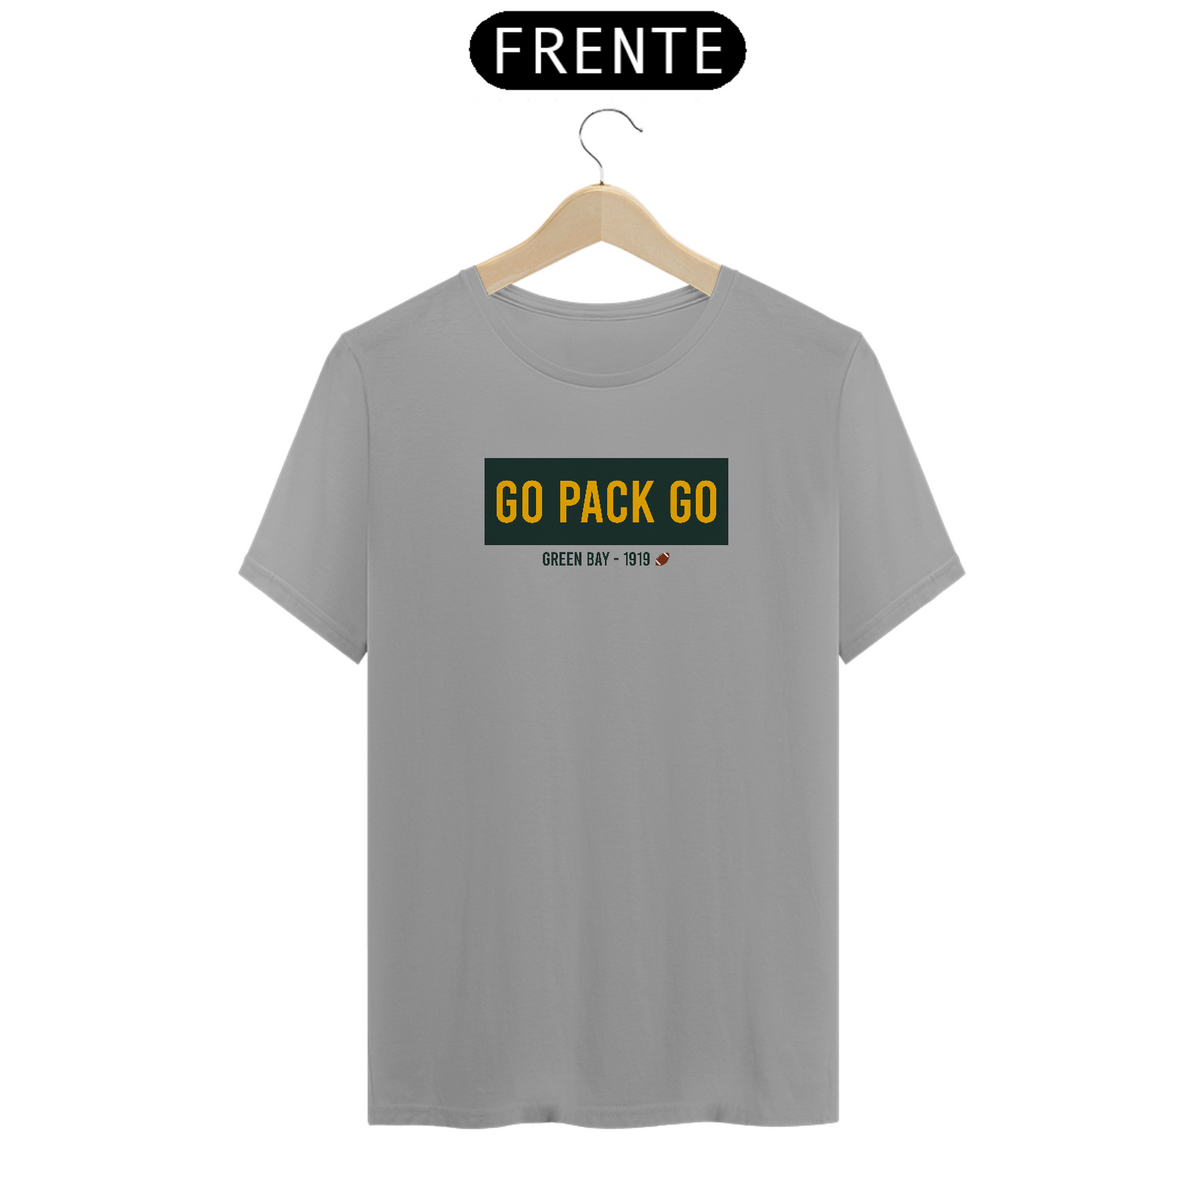 Nome do produto: Camiseta Quality Go Pack Go